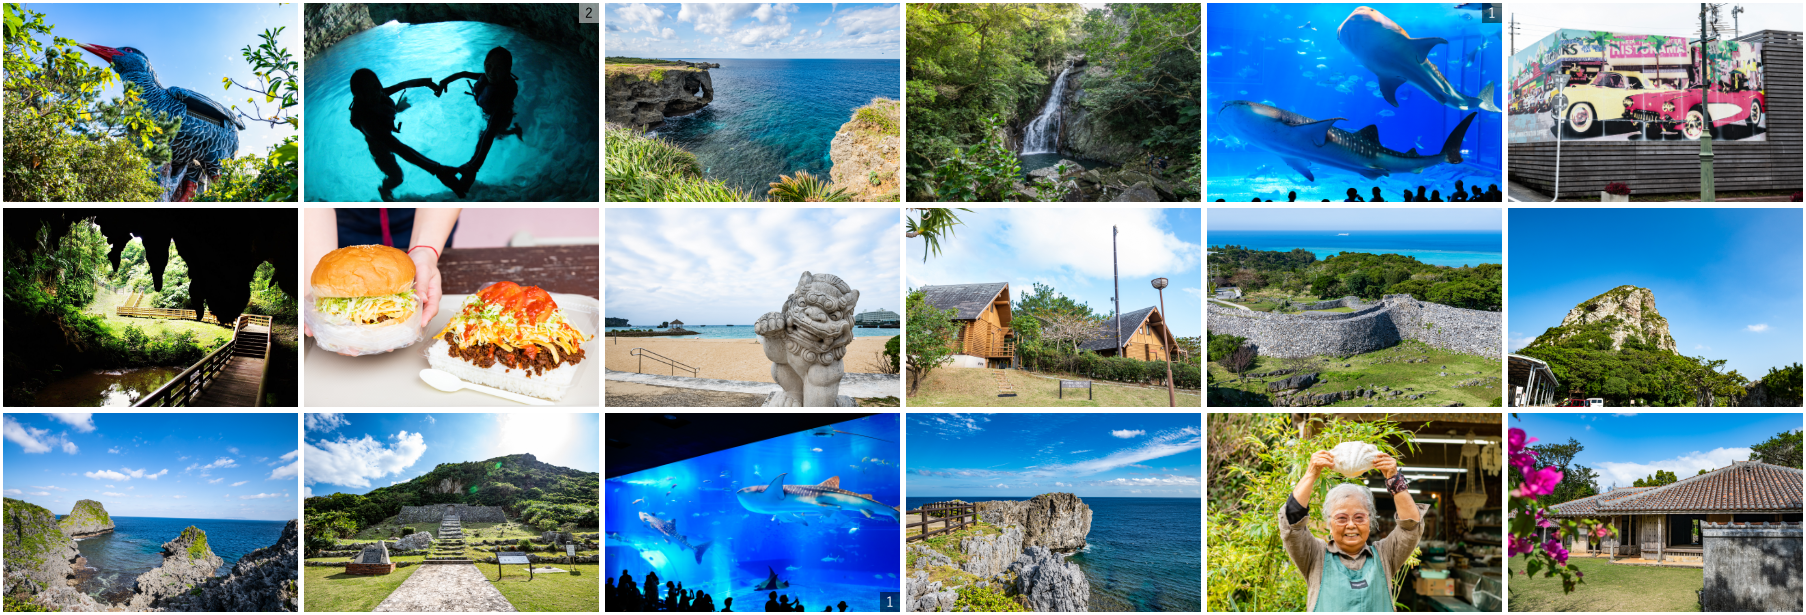 沖繩‧北部觀光推薦觀光景點